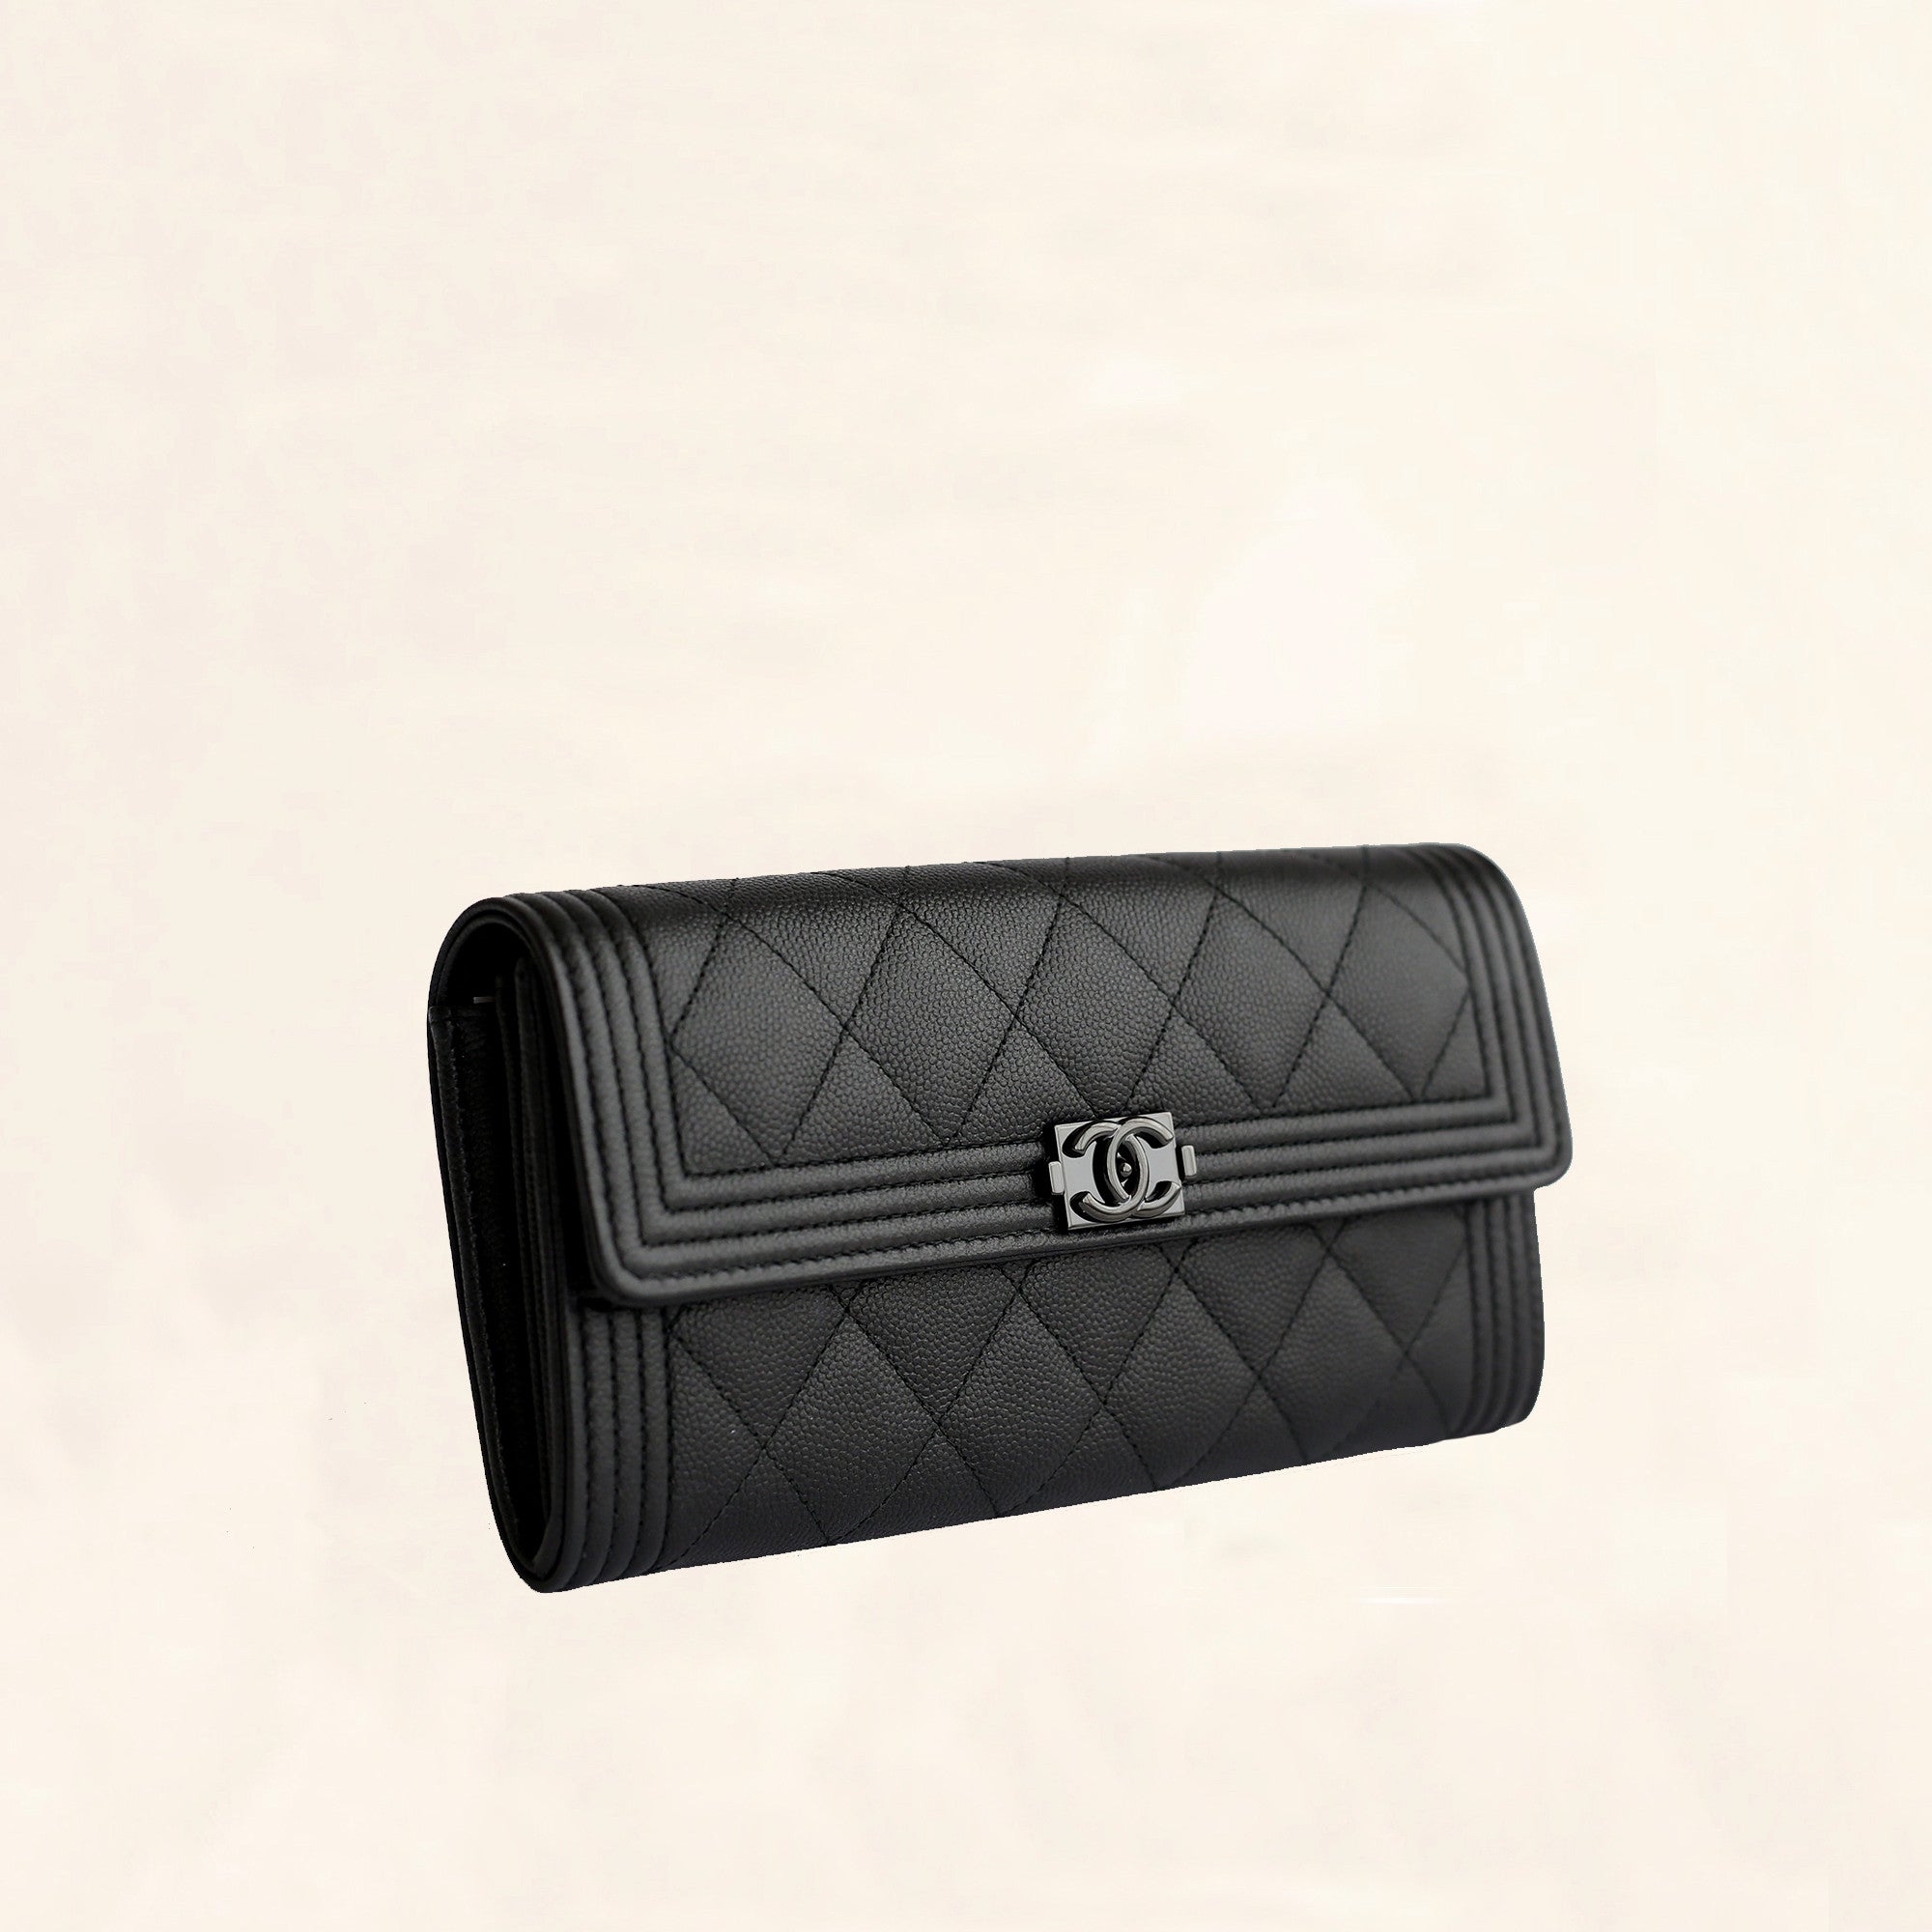 Chanel Black Caviar Boy Card Wallet A84431 Chanel